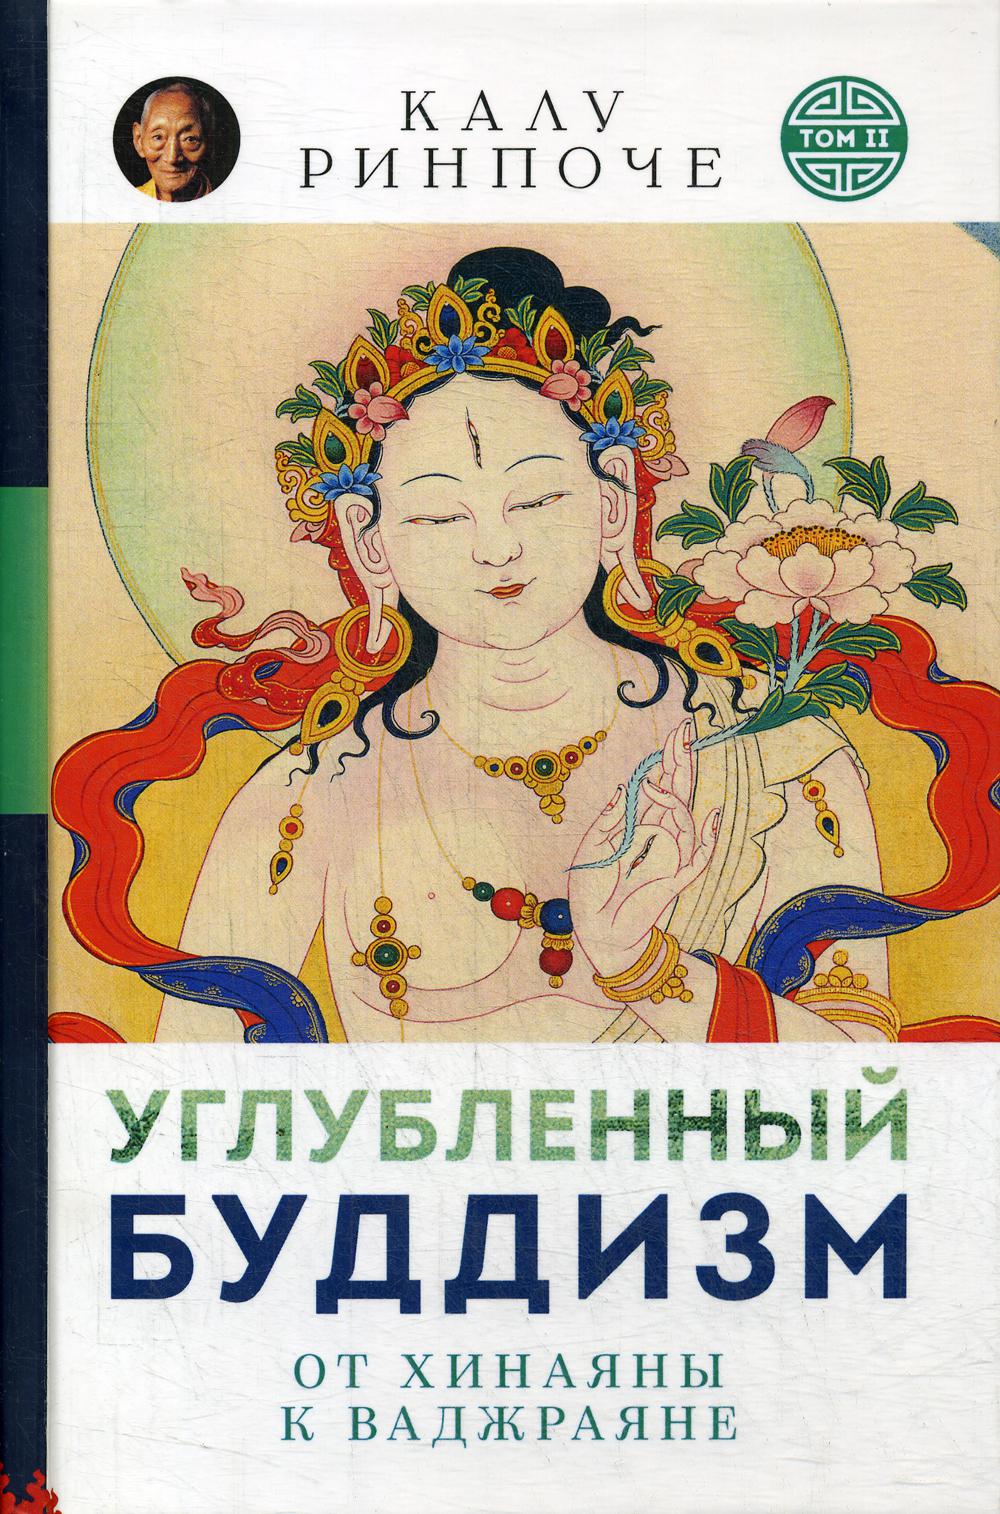 фото Книга углубленный буддизм ориенталия